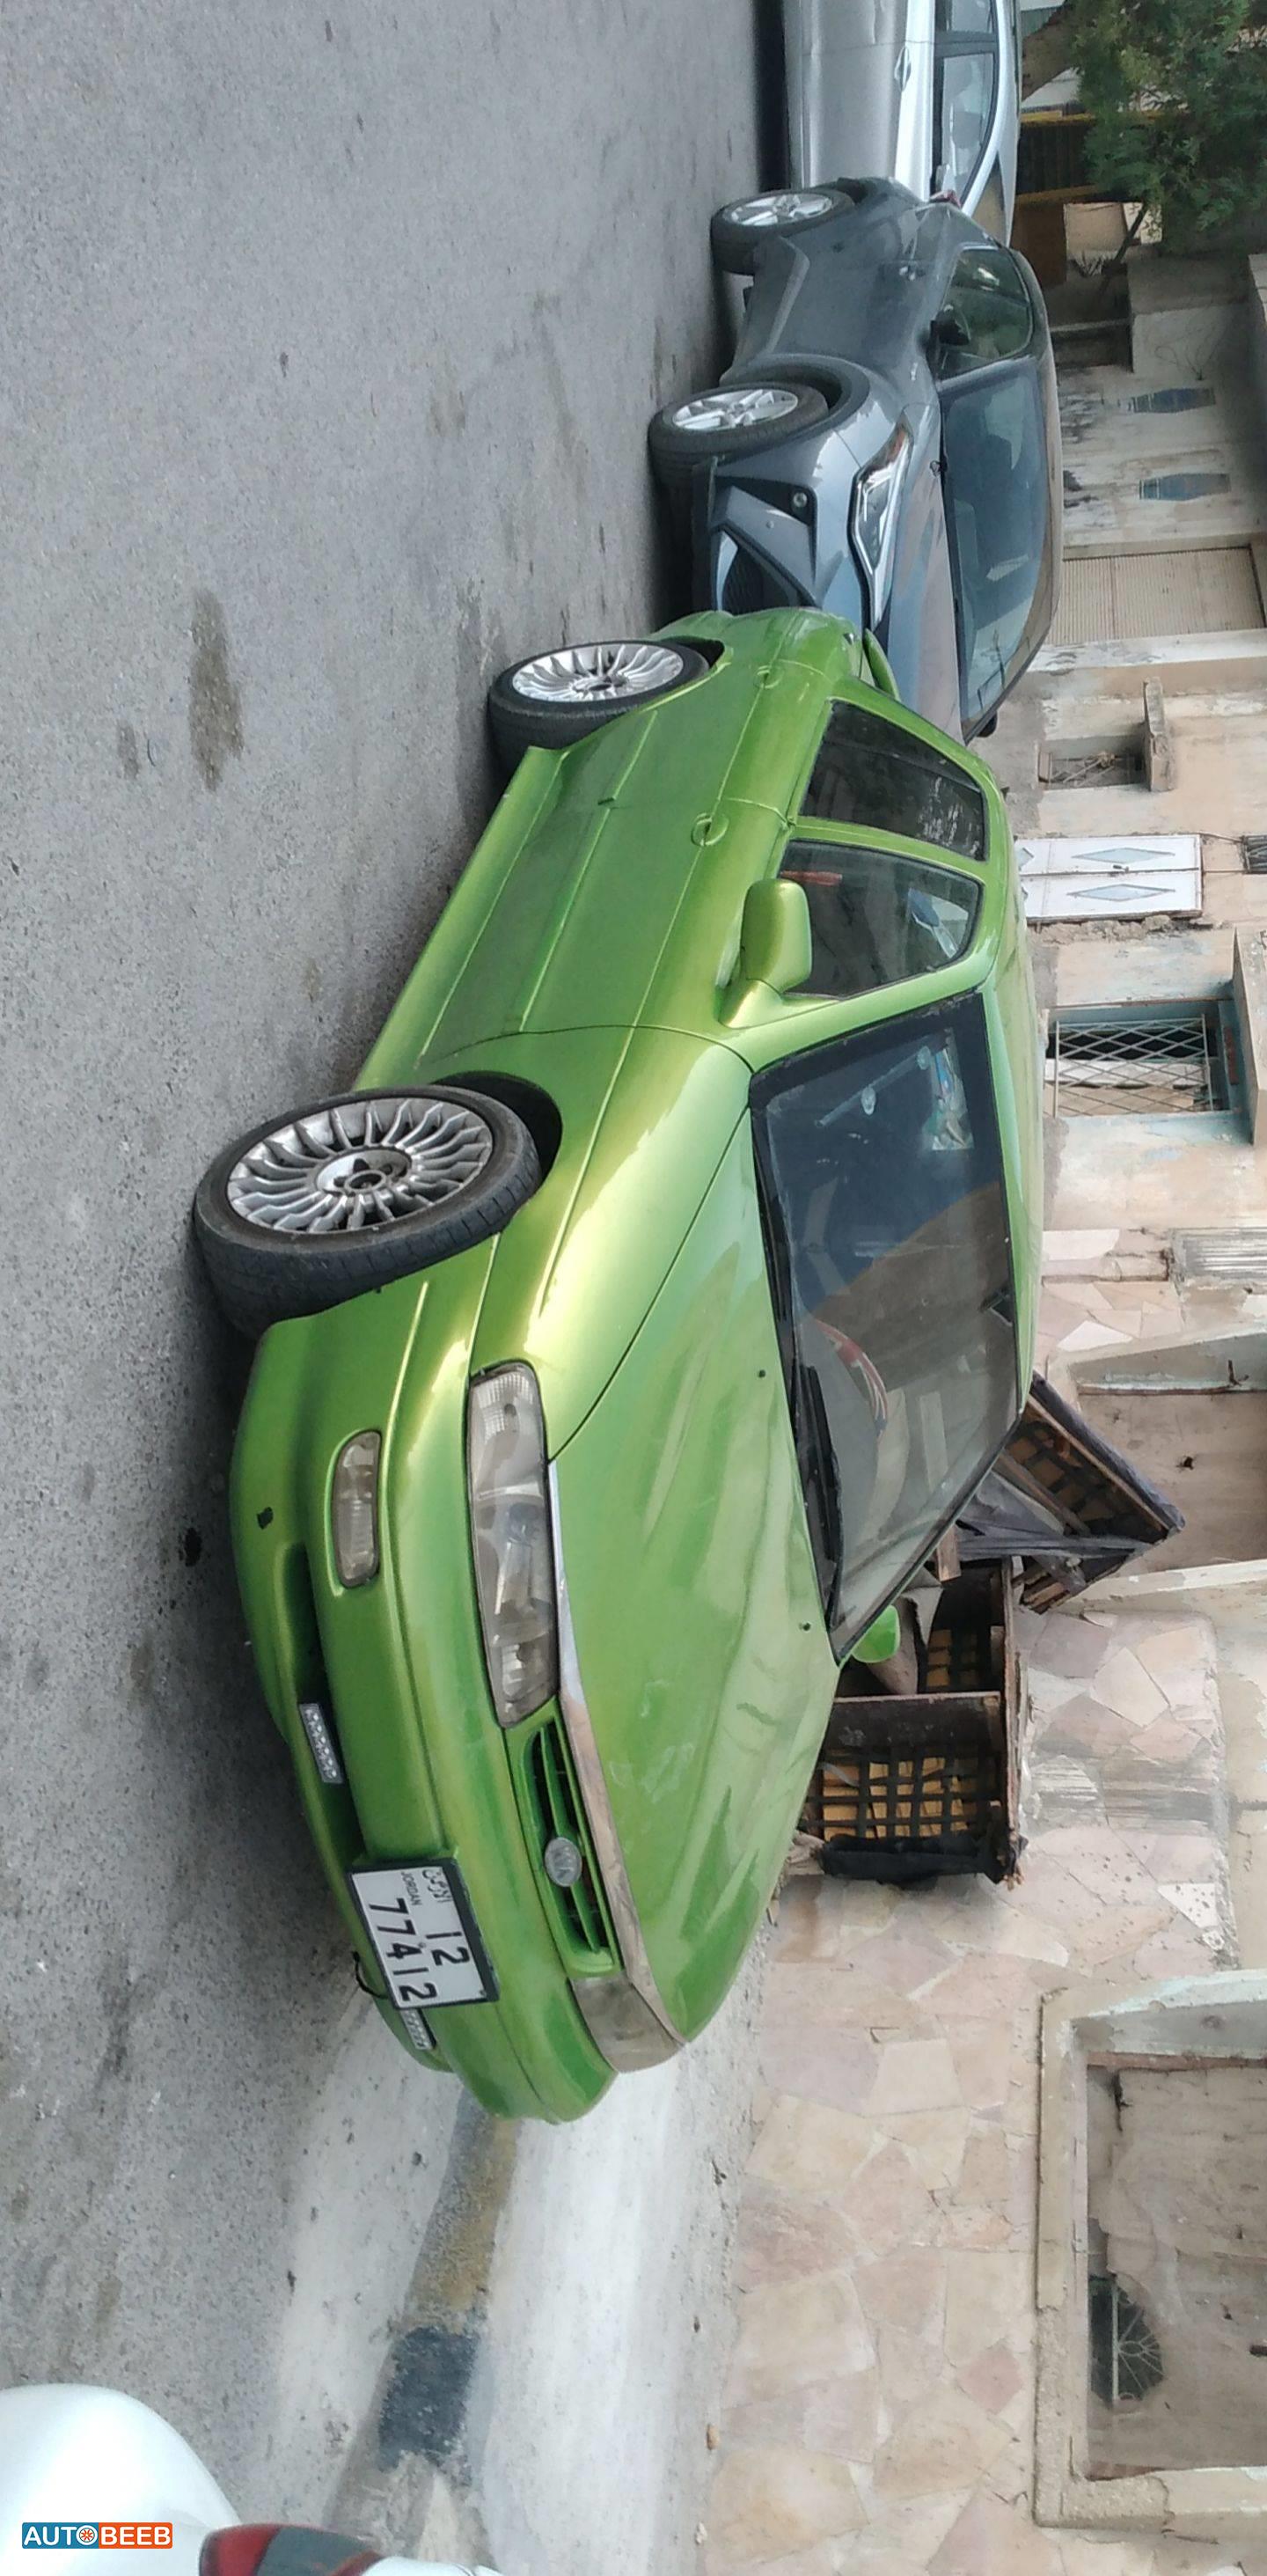 KIA Sephia 1995